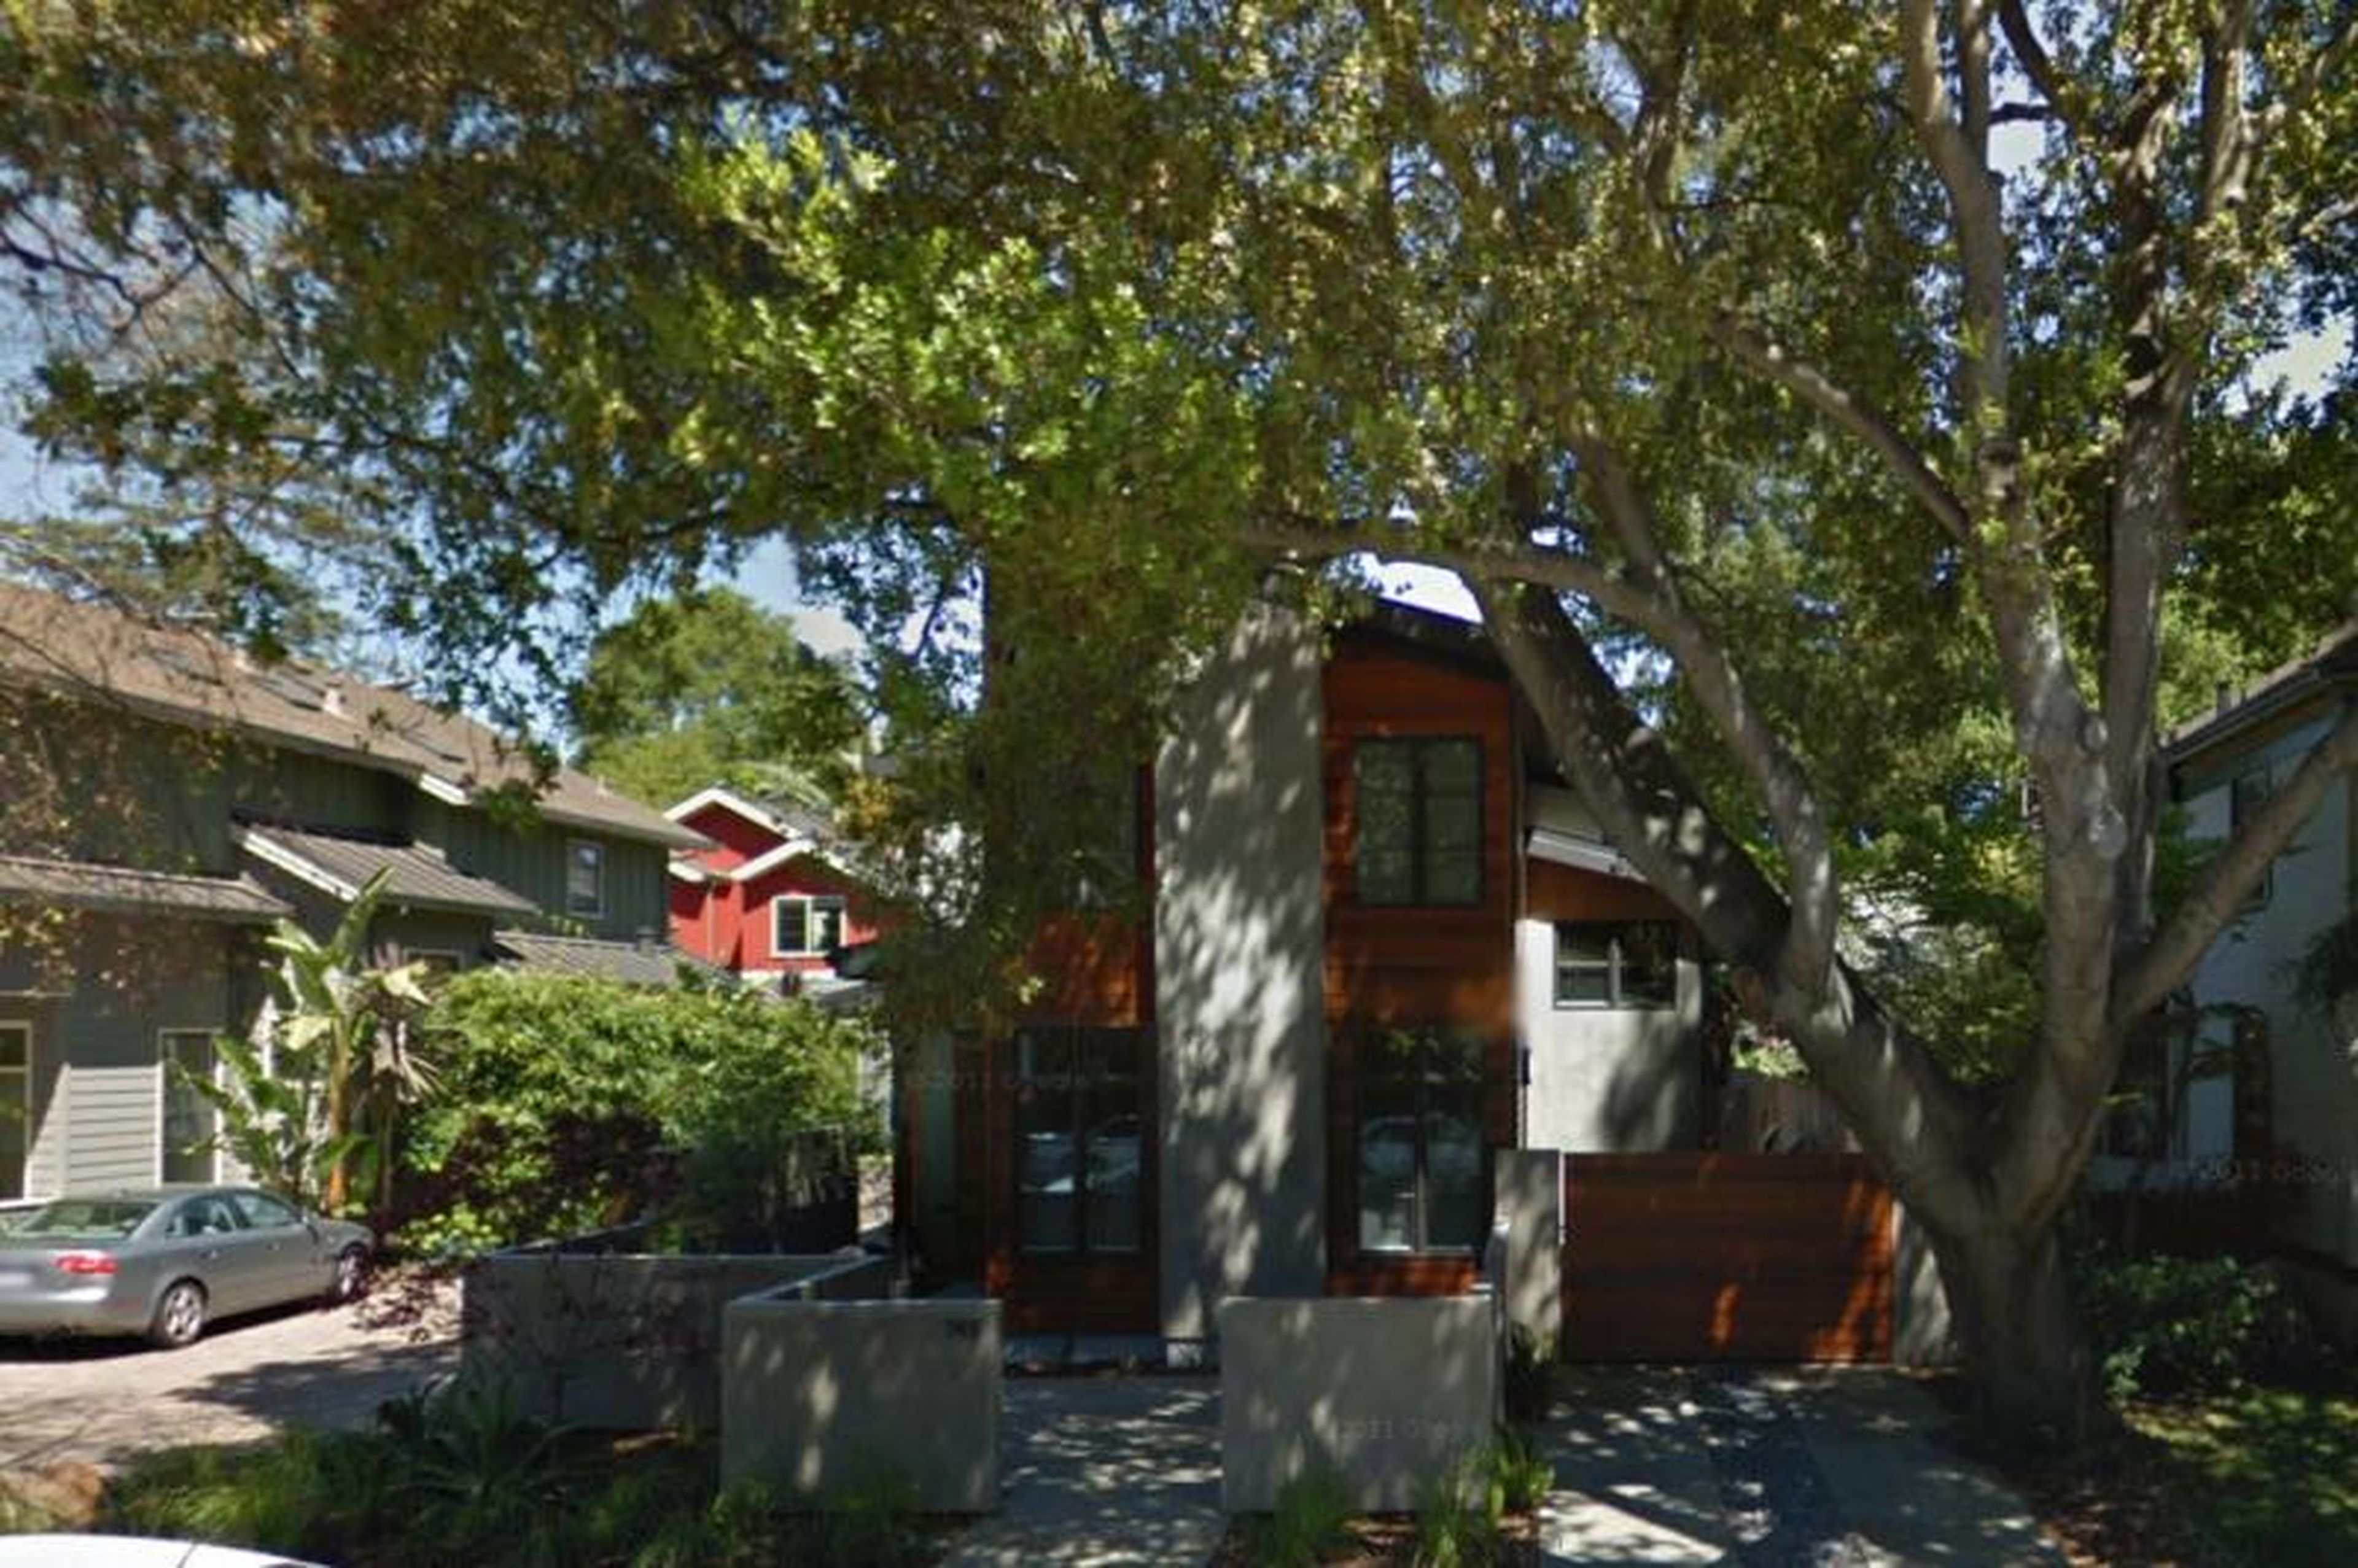 [RE] Tim Cook, CEO de Apple, vive modestamente: compró esta casa de 223 metros cuadrados en Palo Alto, California, en 2010 por menos de 2 millones de dólares.